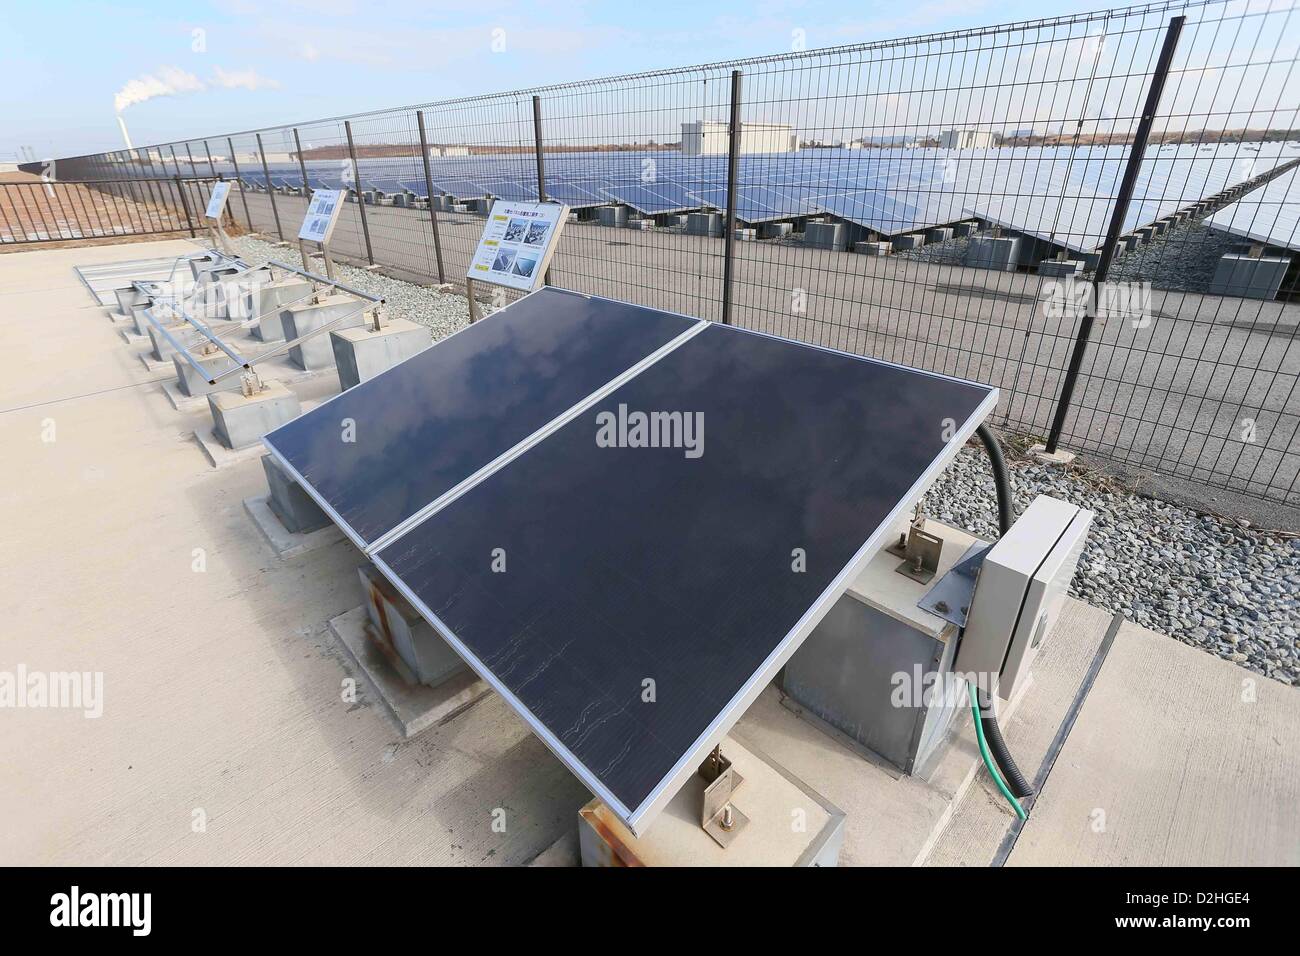 Centrale solaire de Sakai, le 24 janvier 2013 - Actualités : Sakai Installation solaire à Osaka, Japon. (Photo par Akihiro Sugimoto/AFLO) Banque D'Images